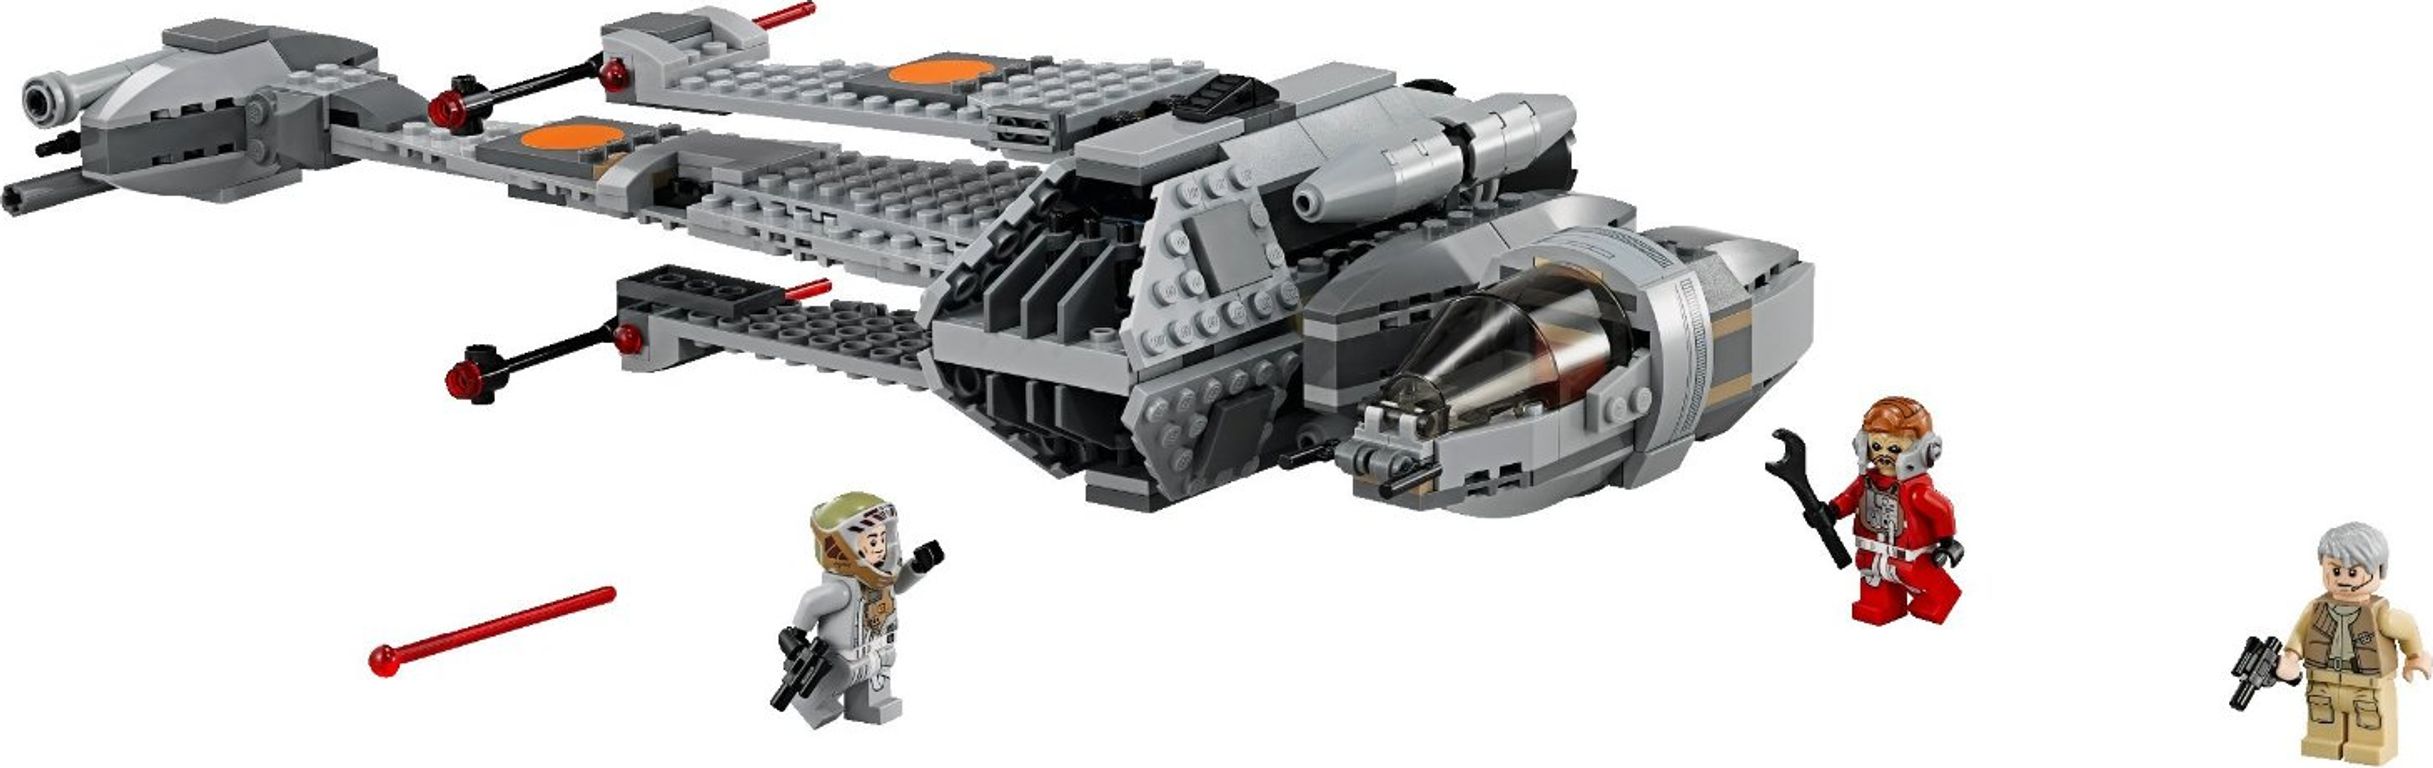 LEGO® Star Wars B-Wing komponenten